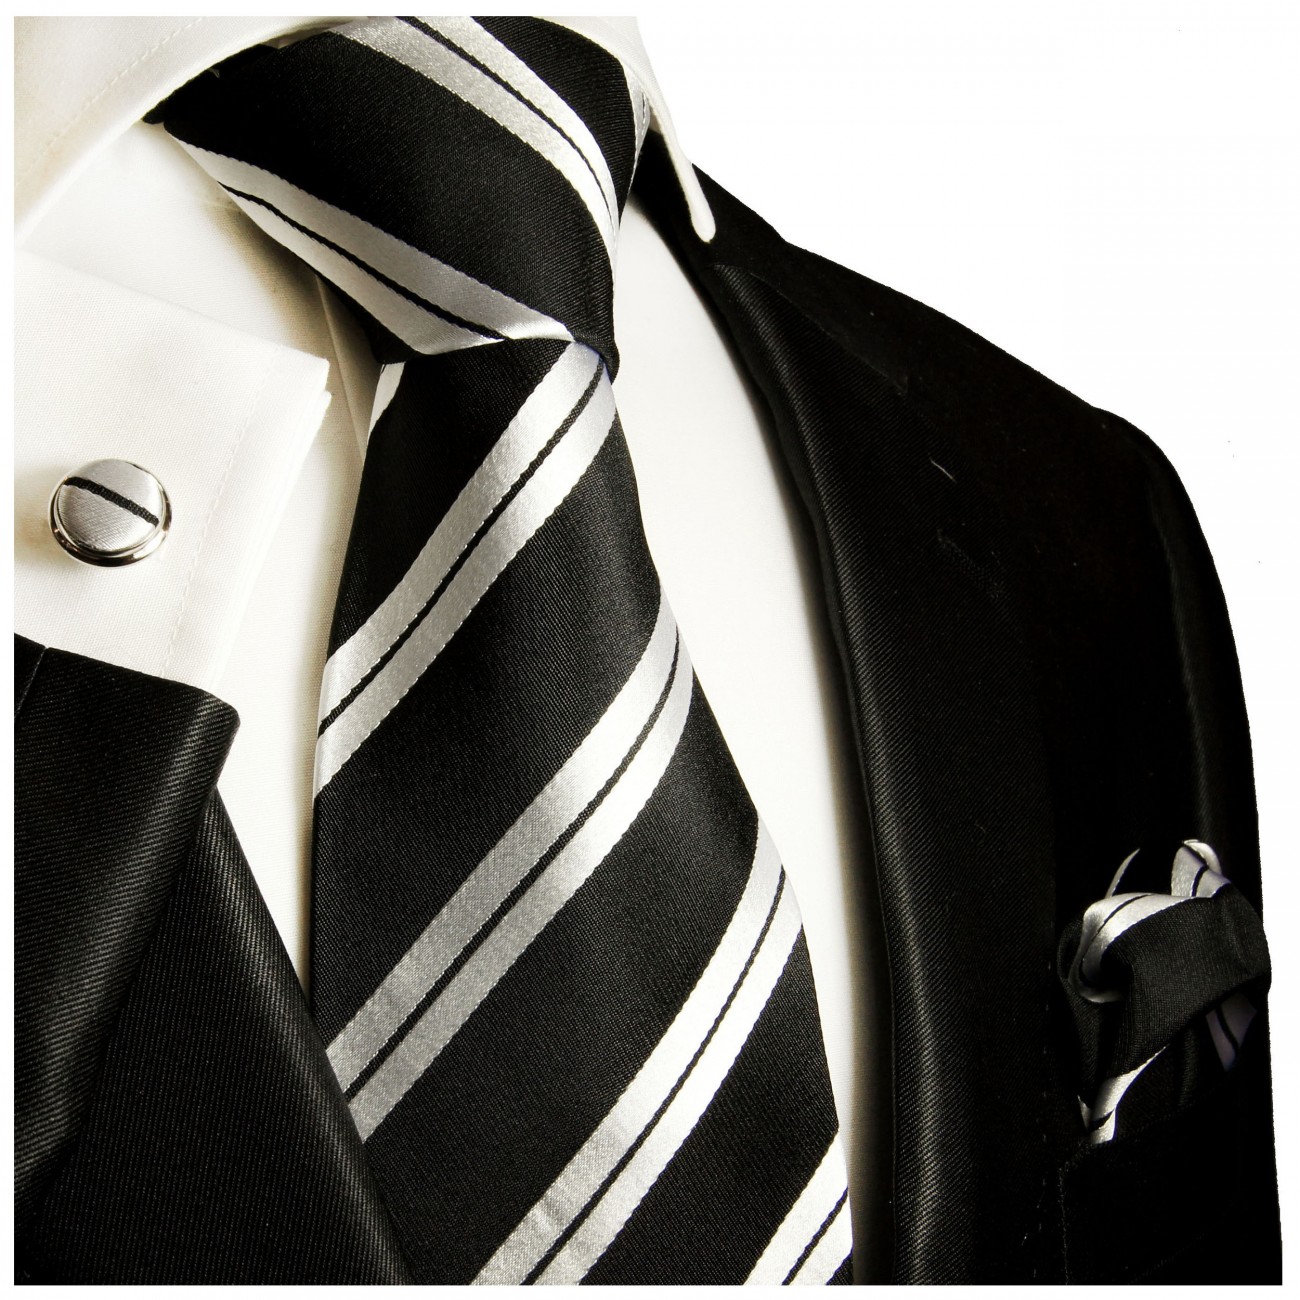 Krawatte schwarz silber gestreift Seide mit Einstecktuch und Manschettenknöpfe